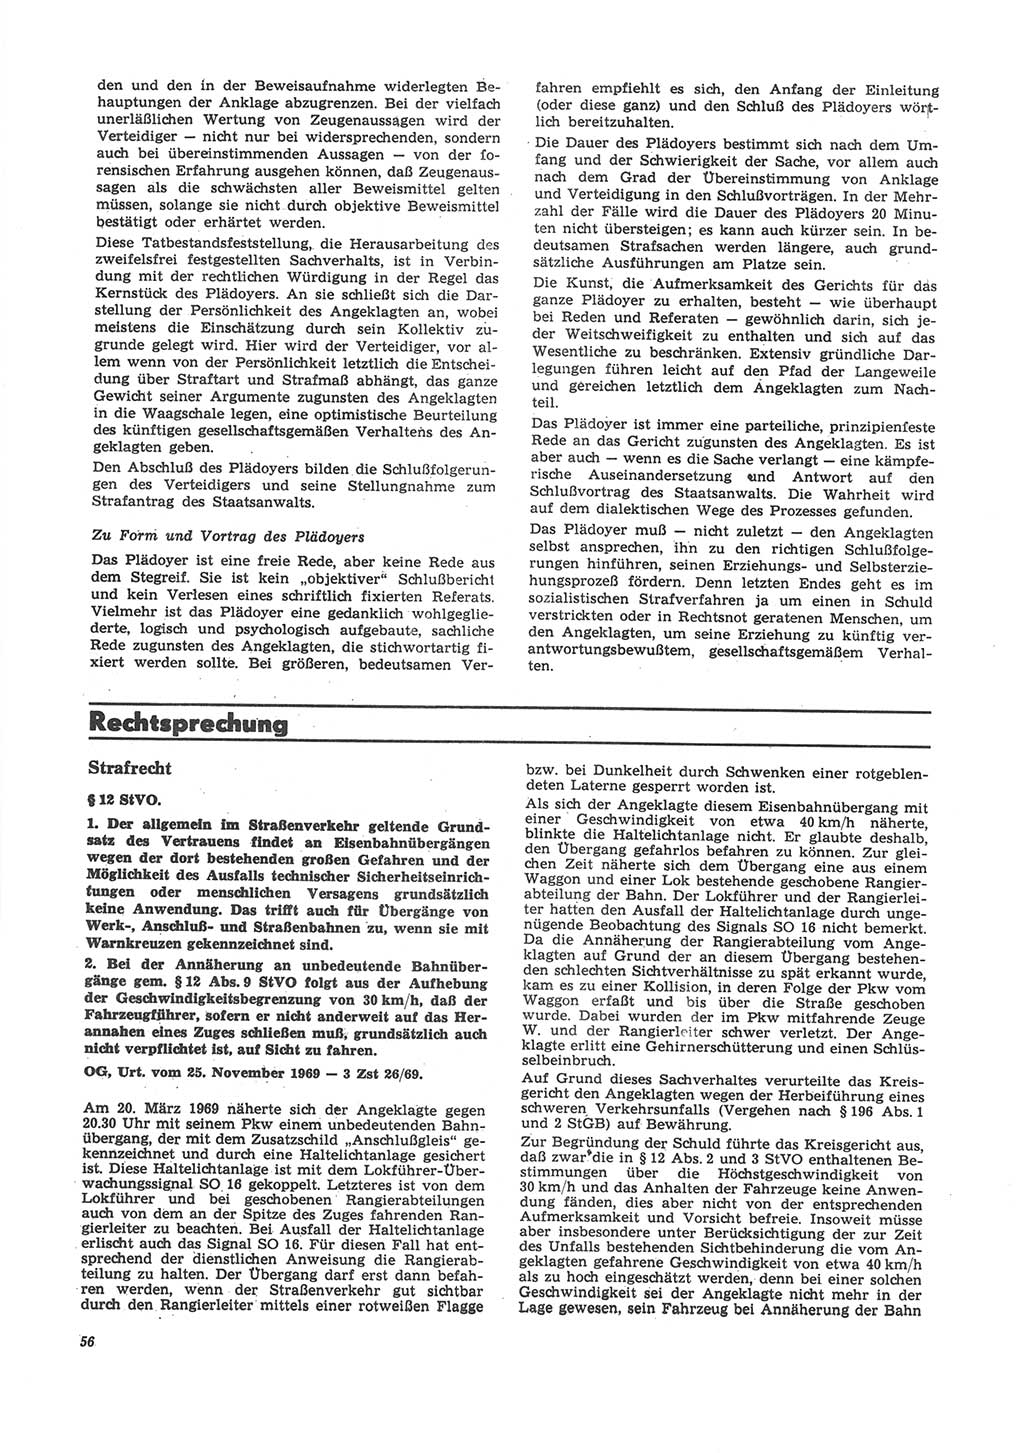 Neue Justiz (NJ), Zeitschrift für Recht und Rechtswissenschaft [Deutsche Demokratische Republik (DDR)], 24. Jahrgang 1970, Seite 56 (NJ DDR 1970, S. 56)